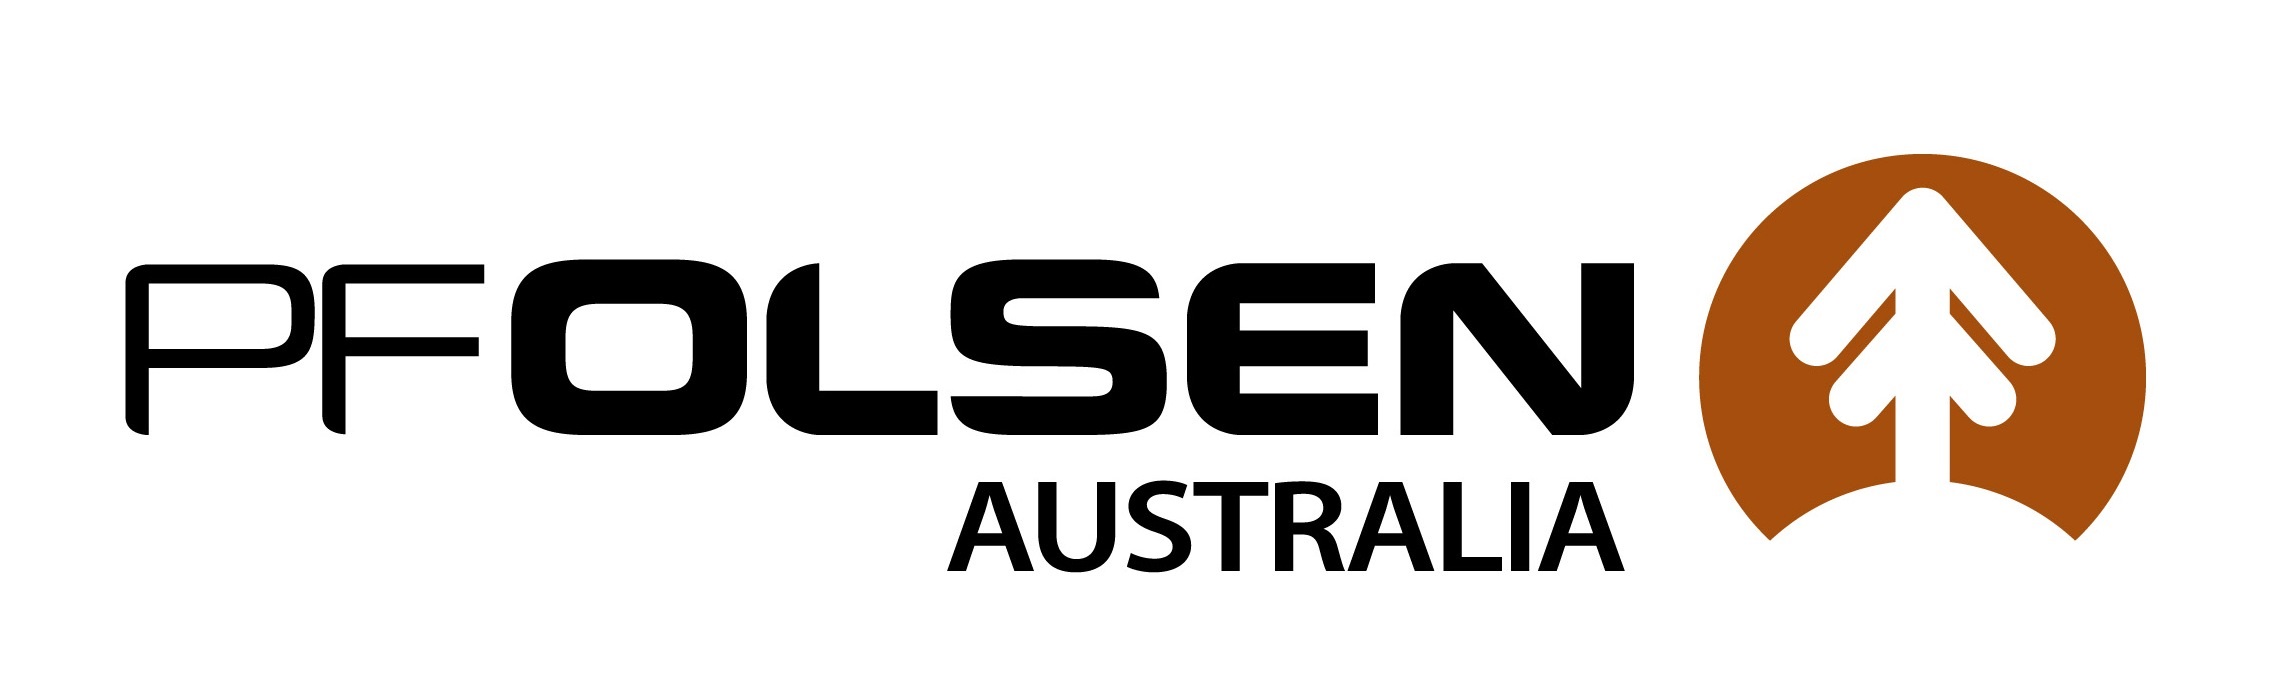 PF Olsen Australia